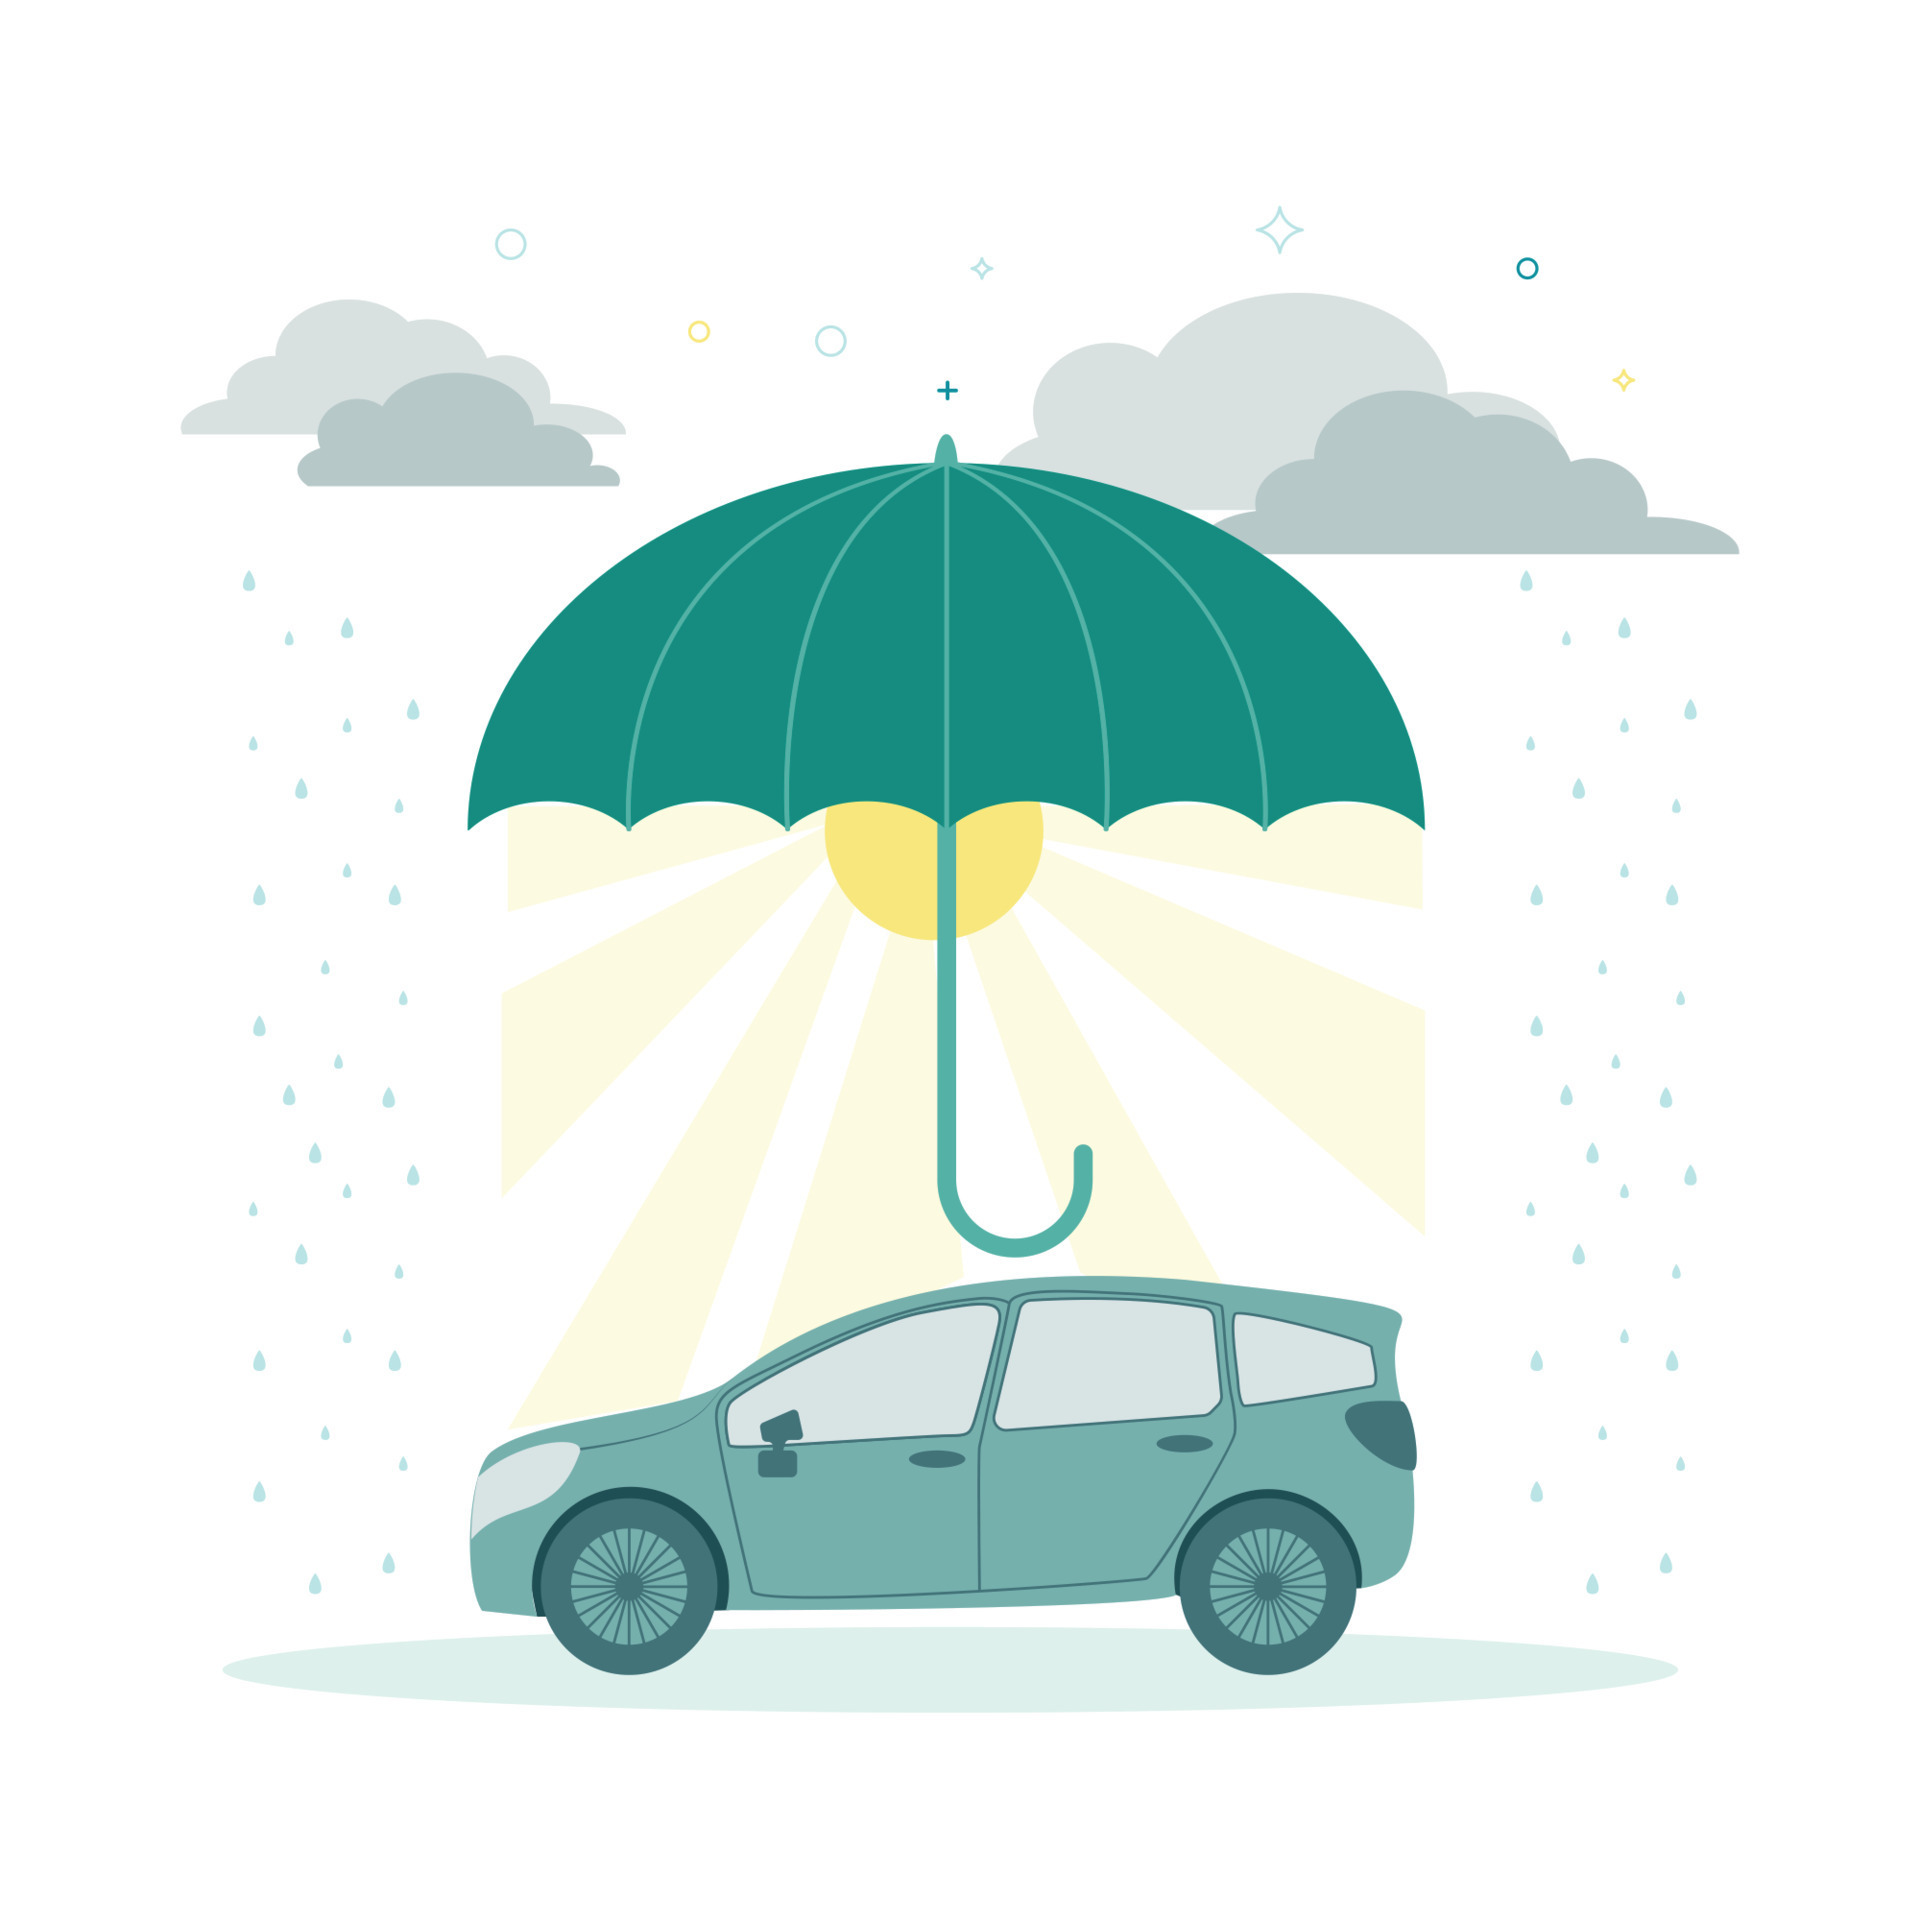 Finanzen. Vektor Illustration Versicherung. Regenschirm Über das Auto,  Sonne unter das Regenschirm, um das Wolken, Regen 22046420 Vektor Kunst bei  Vecteezy